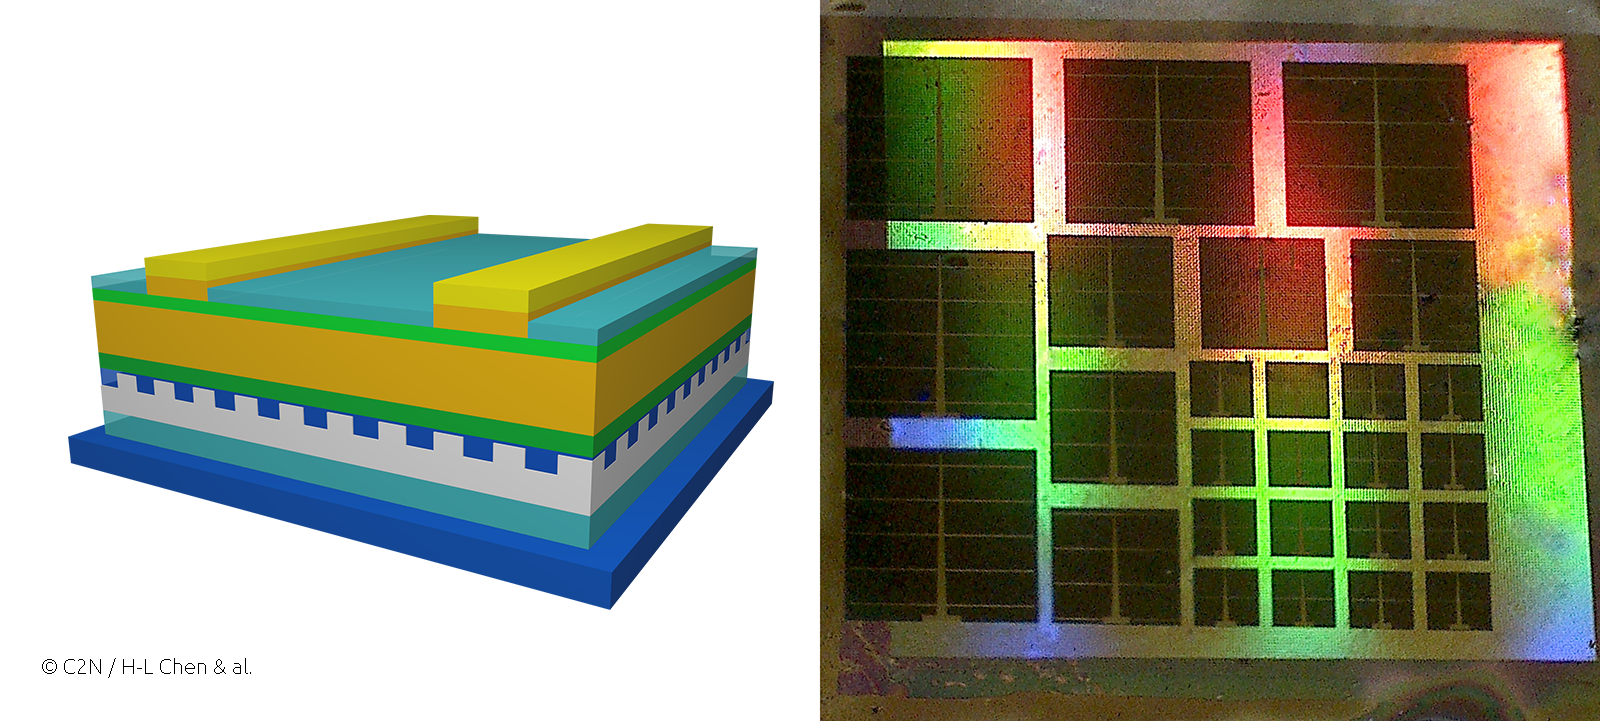 (à gauche) Représentation schématique de la cellule solaire ultrafine en GaAs formée d'un miroir nanostructuré en face arrière. (à droite) Photo d'un échantillon montrant les effets de diffraction du miroir nanostructuré dans l'air (irisations colorées), et favorisant l'absorption dans les cellules solaires ultrafines (carrés noirs). 